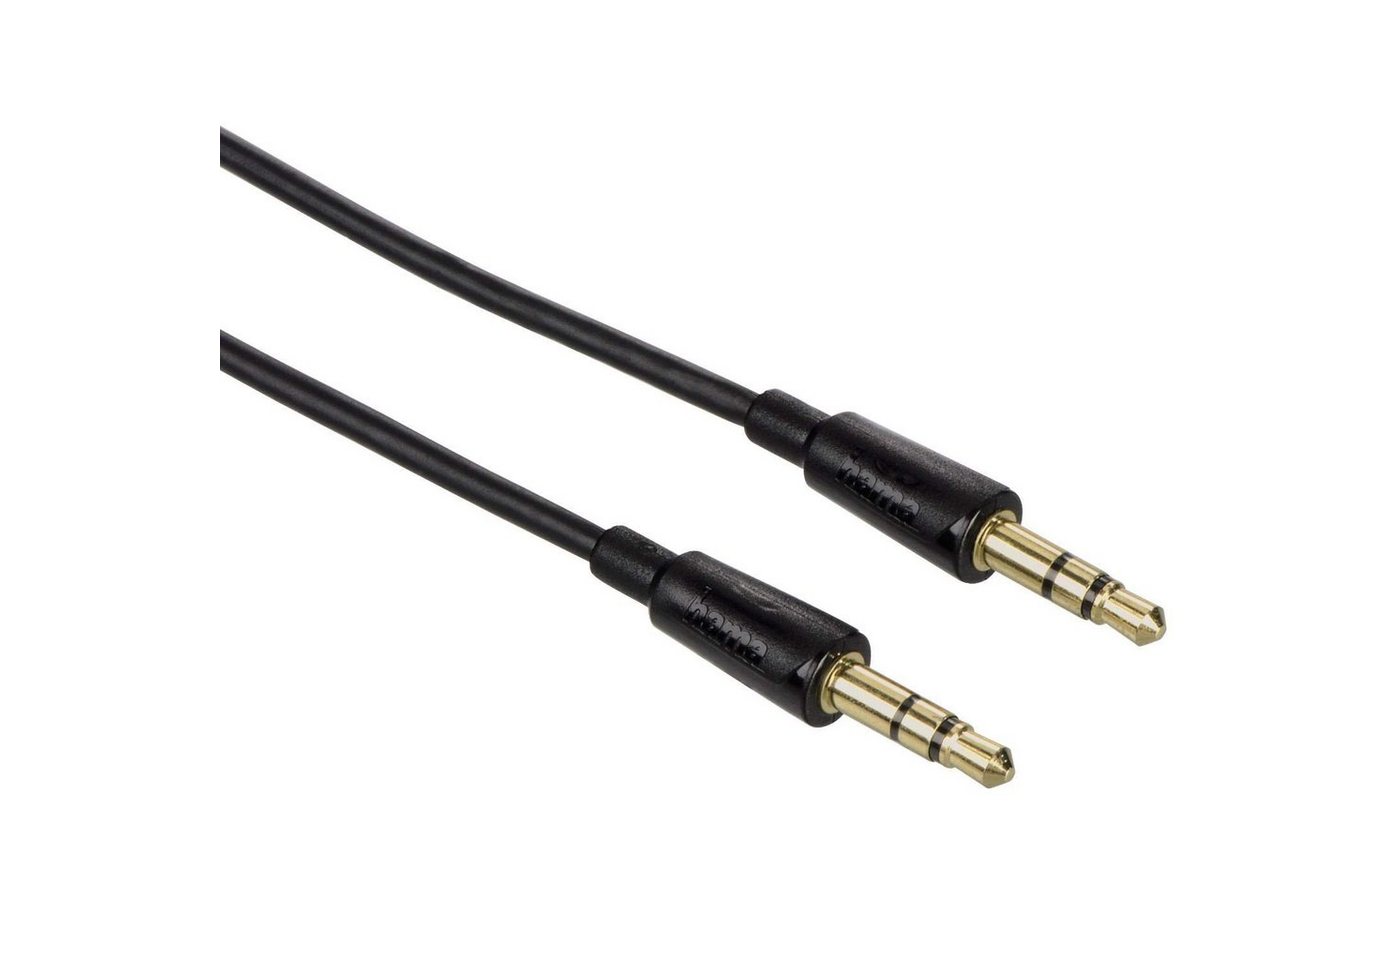 Hama Slim AUX Kabel 3,5mm Klinke-Kabel 0,5m Schwarz Audio-Kabel, 3,5-mm-Klinke, 3,5mm Klinke (50 cm), dünnes Klinken-Kabel Audio-Adapter für Handy Tablet PC MP4- MP3-Player von Hama